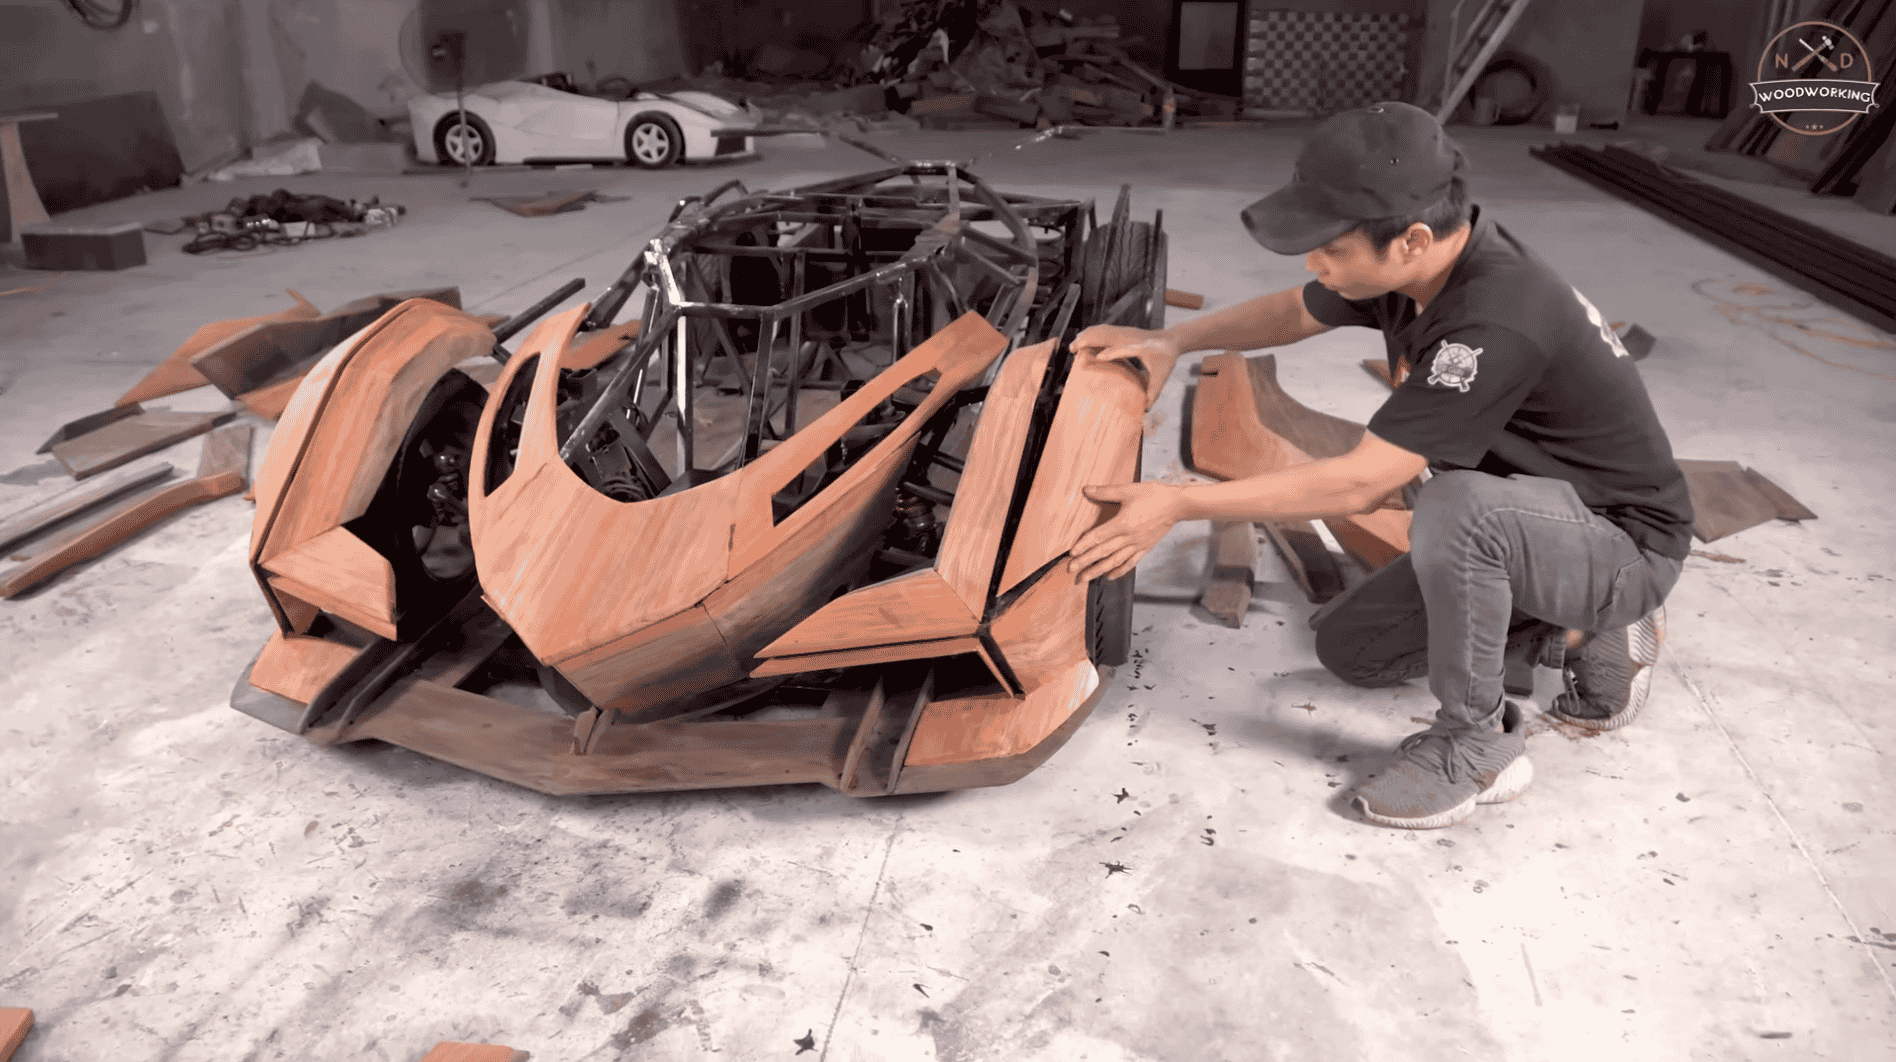 Tạo ra siêu phẩm Lamborghini V12 Vision Gran Turismo bằng gỗ được gần 1 năm, ông bố Việt Nam vẫn được cộng đồng quốc tế khen hết lời - Ảnh 5.